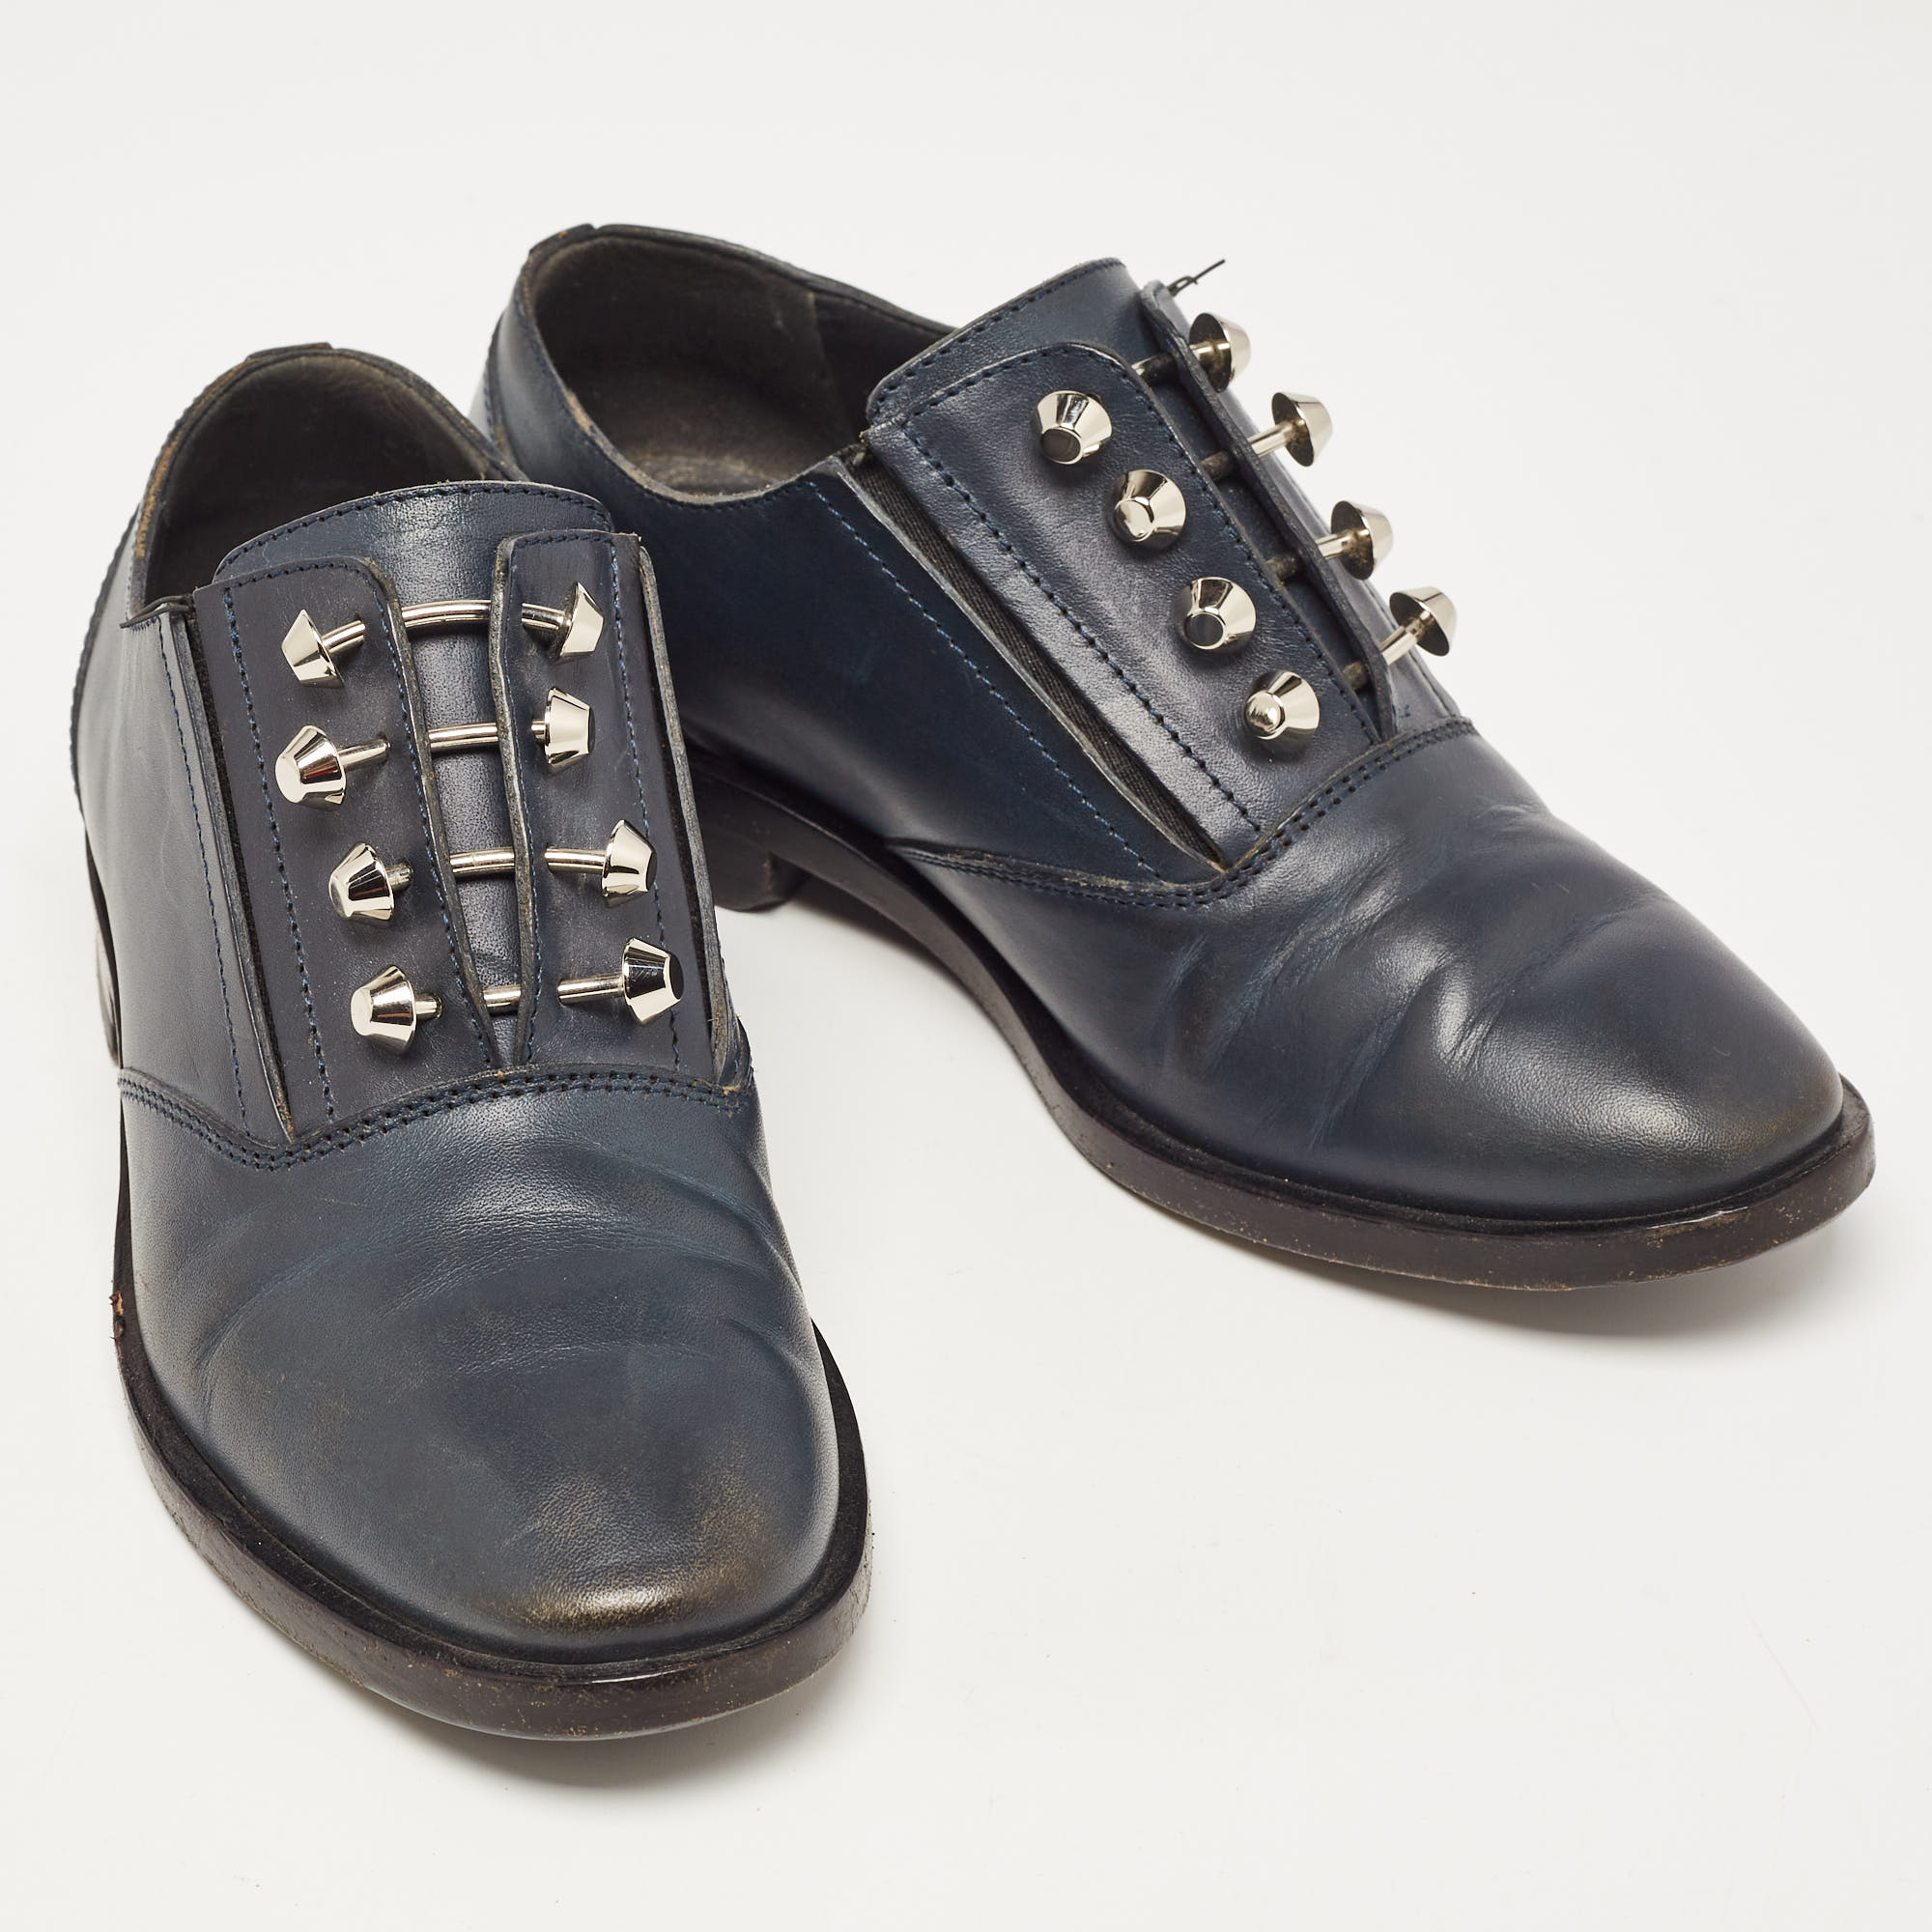 Balenciaga Navy Blue Leather Oxfords Size 36